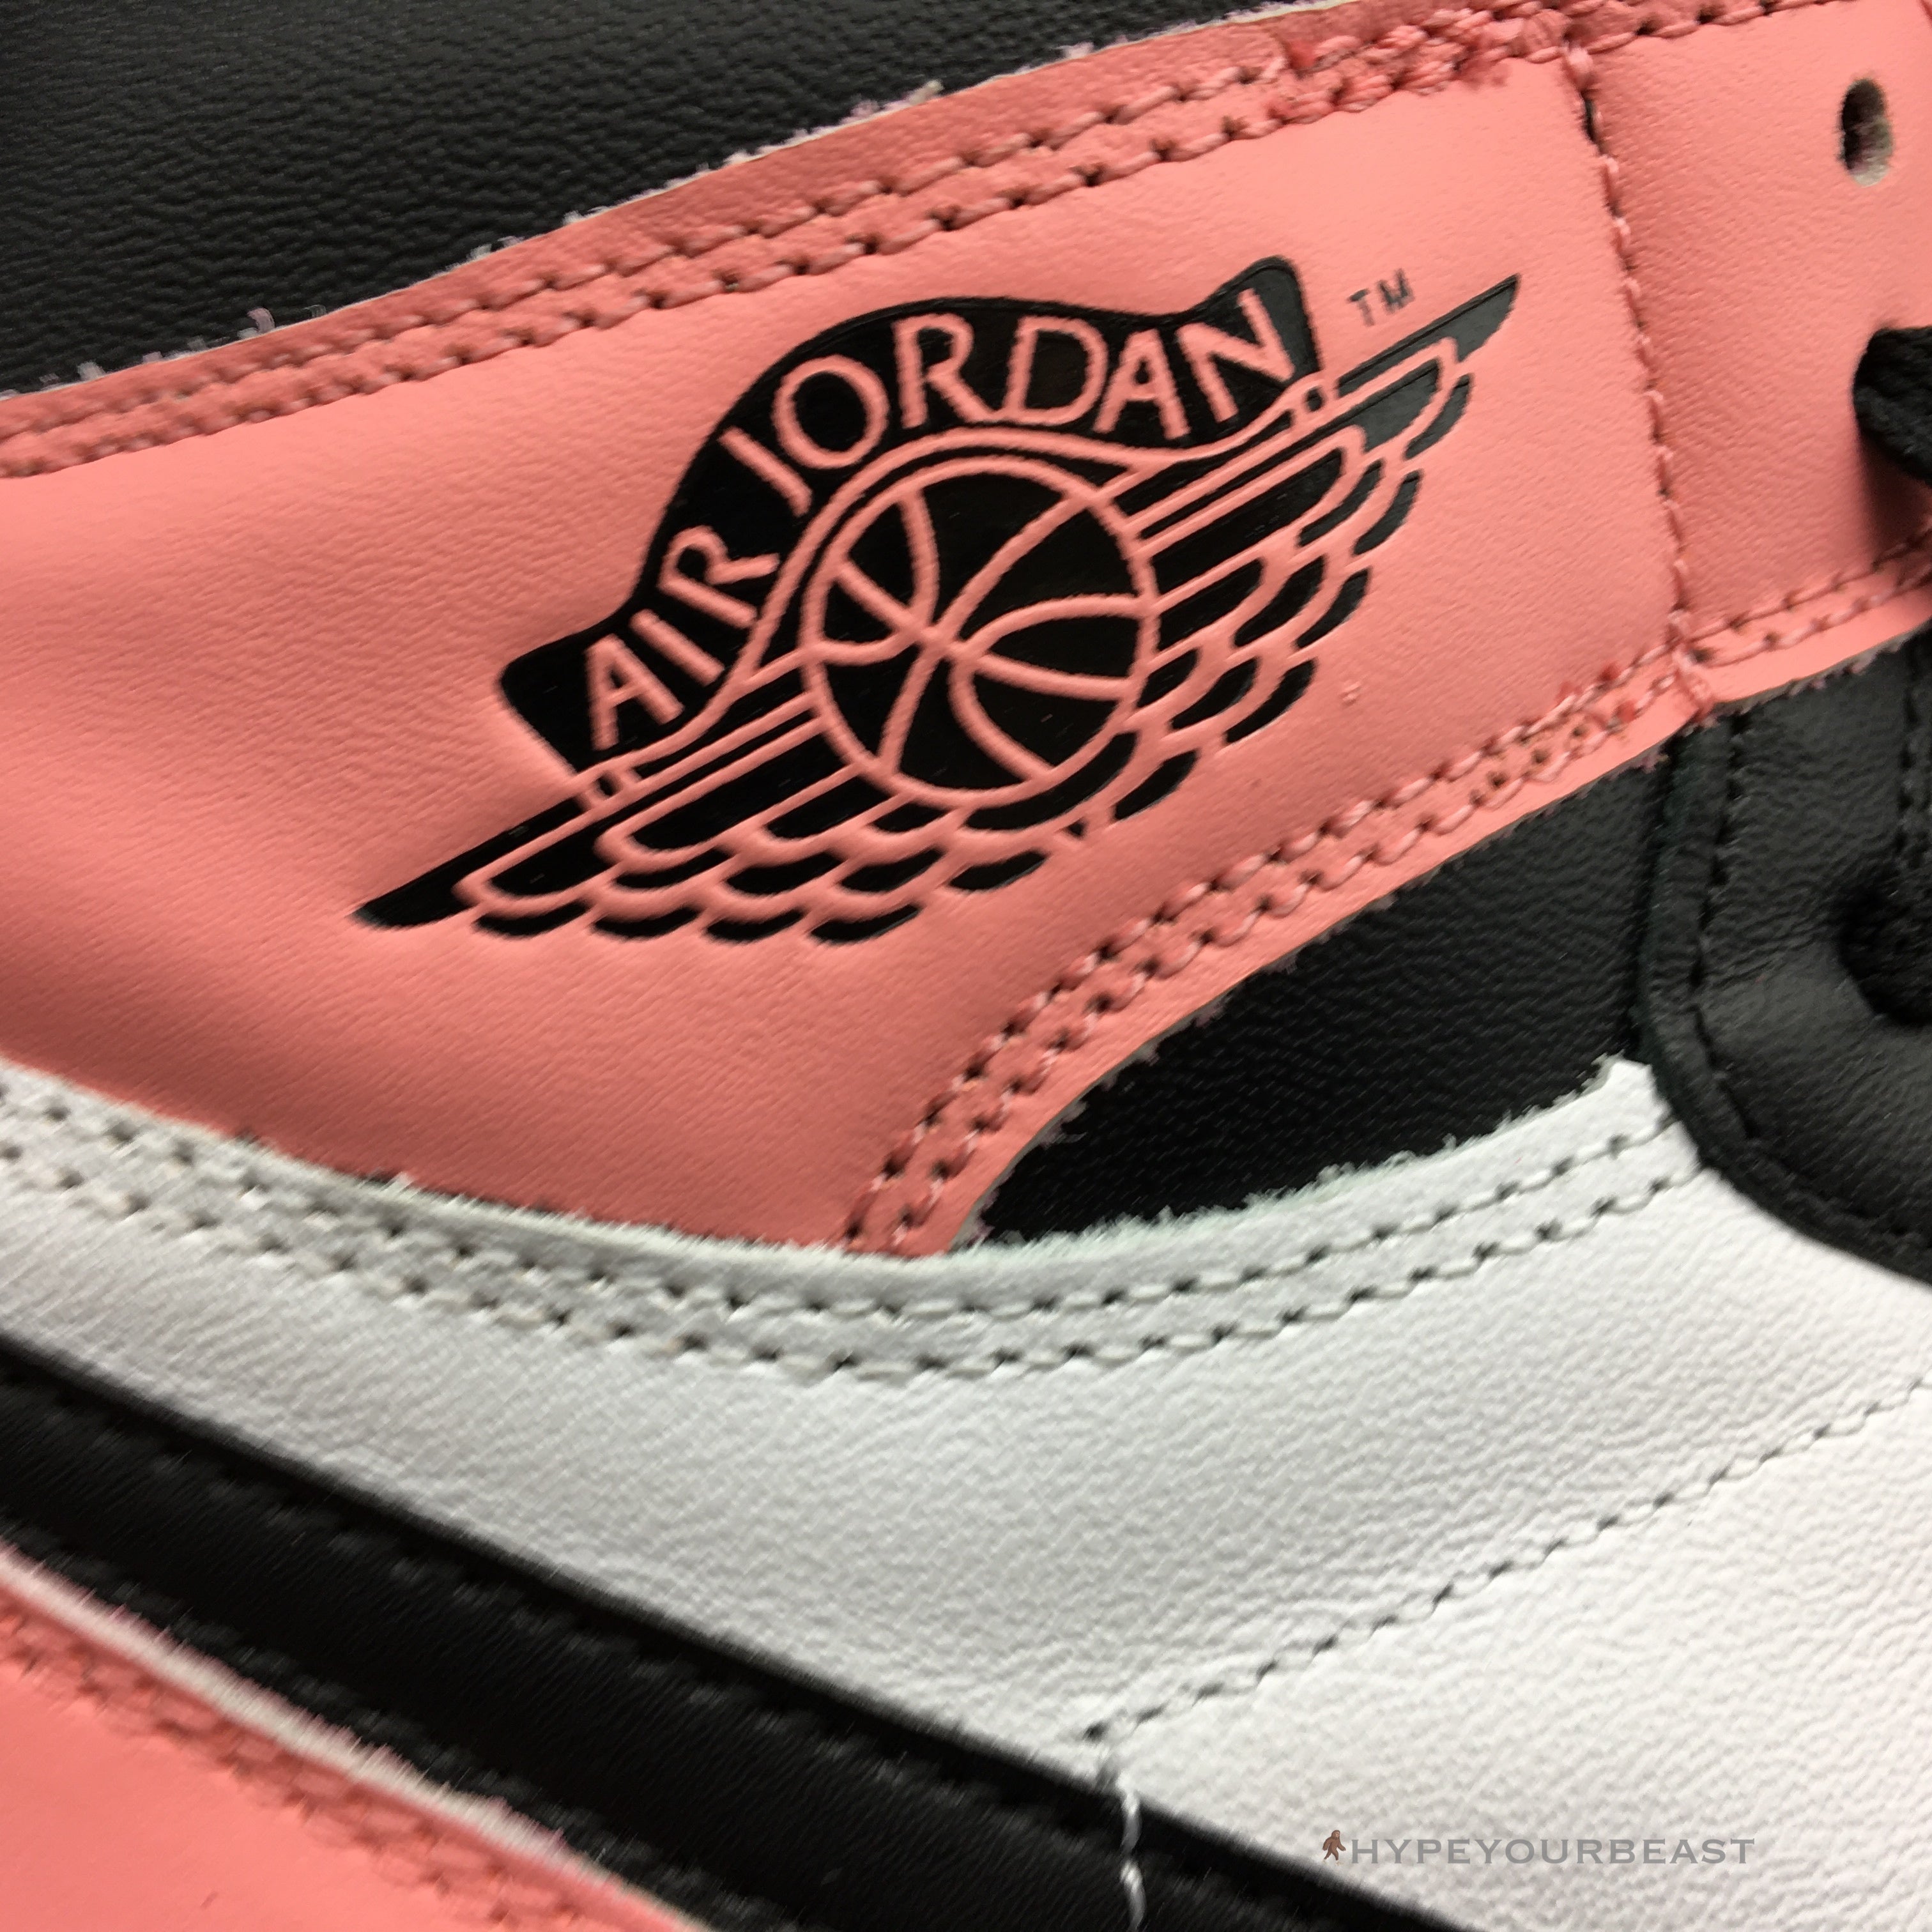 Air Jordan 1 Retro High OG Rust Pink